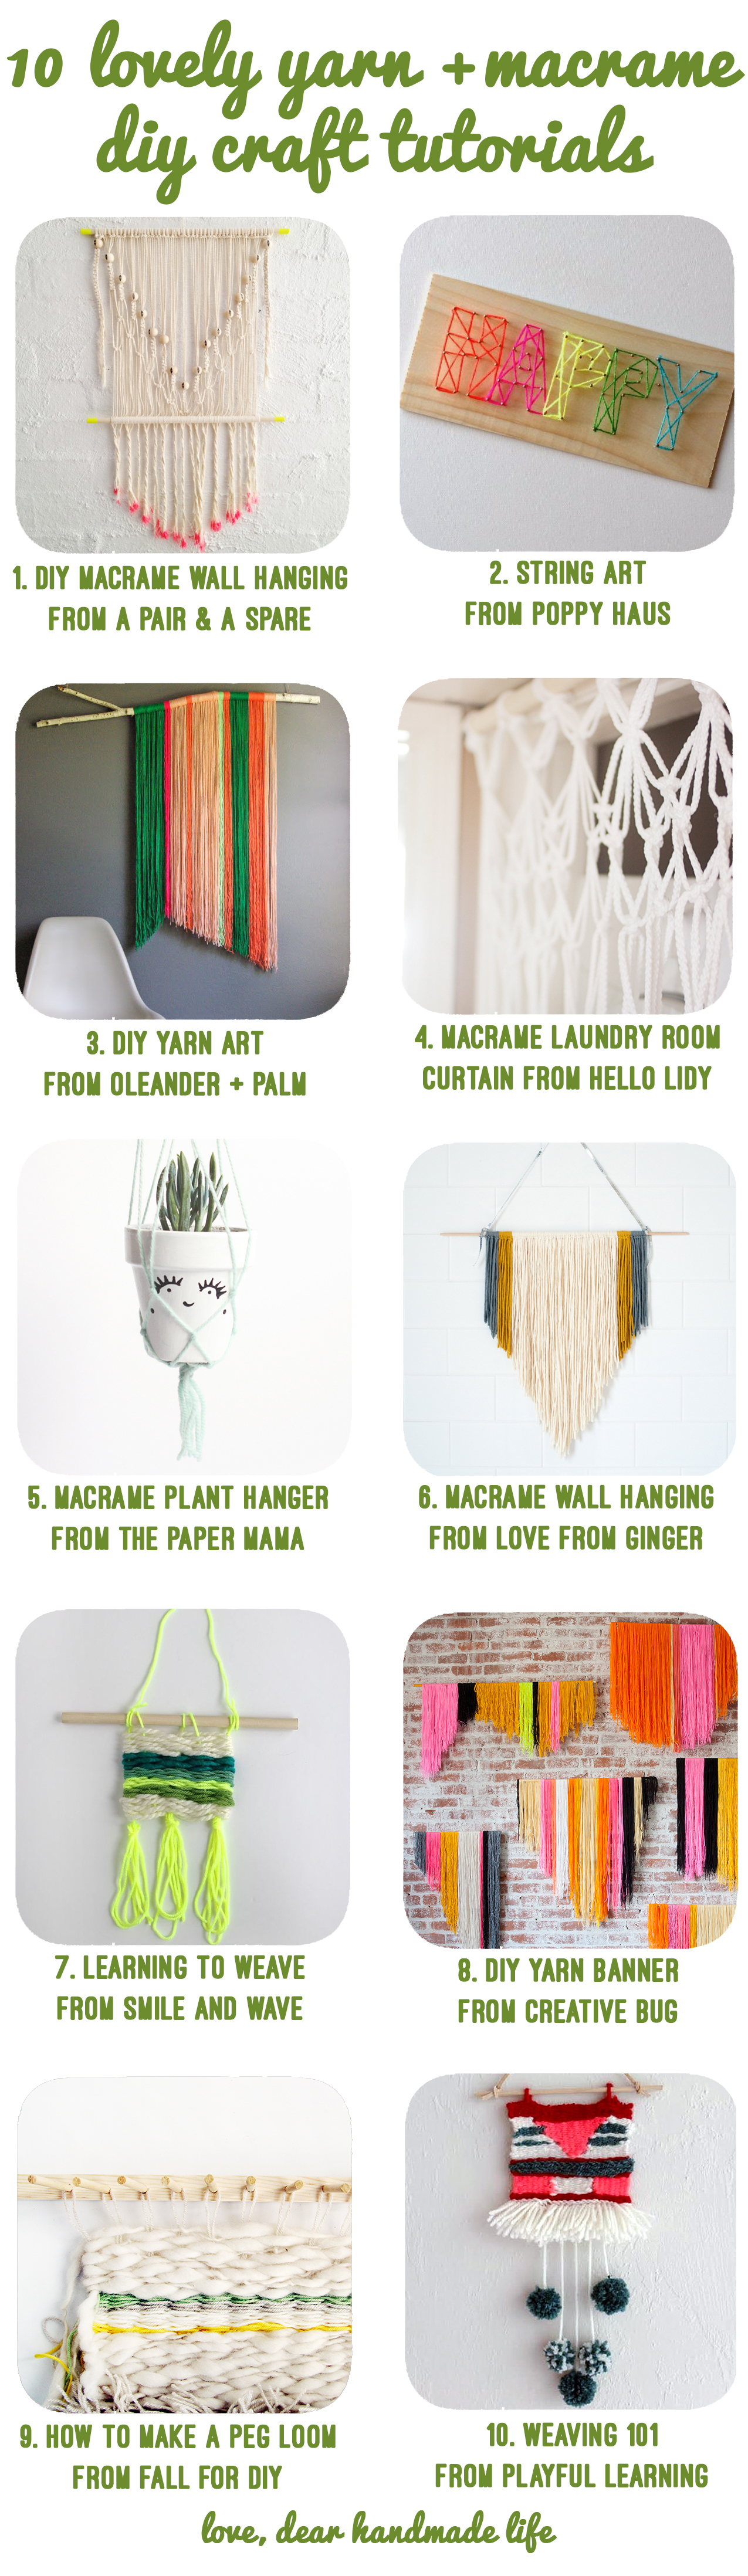 10-lovely-diy-craft-tutorials-macrame-yarn-dear-handmade-life-art